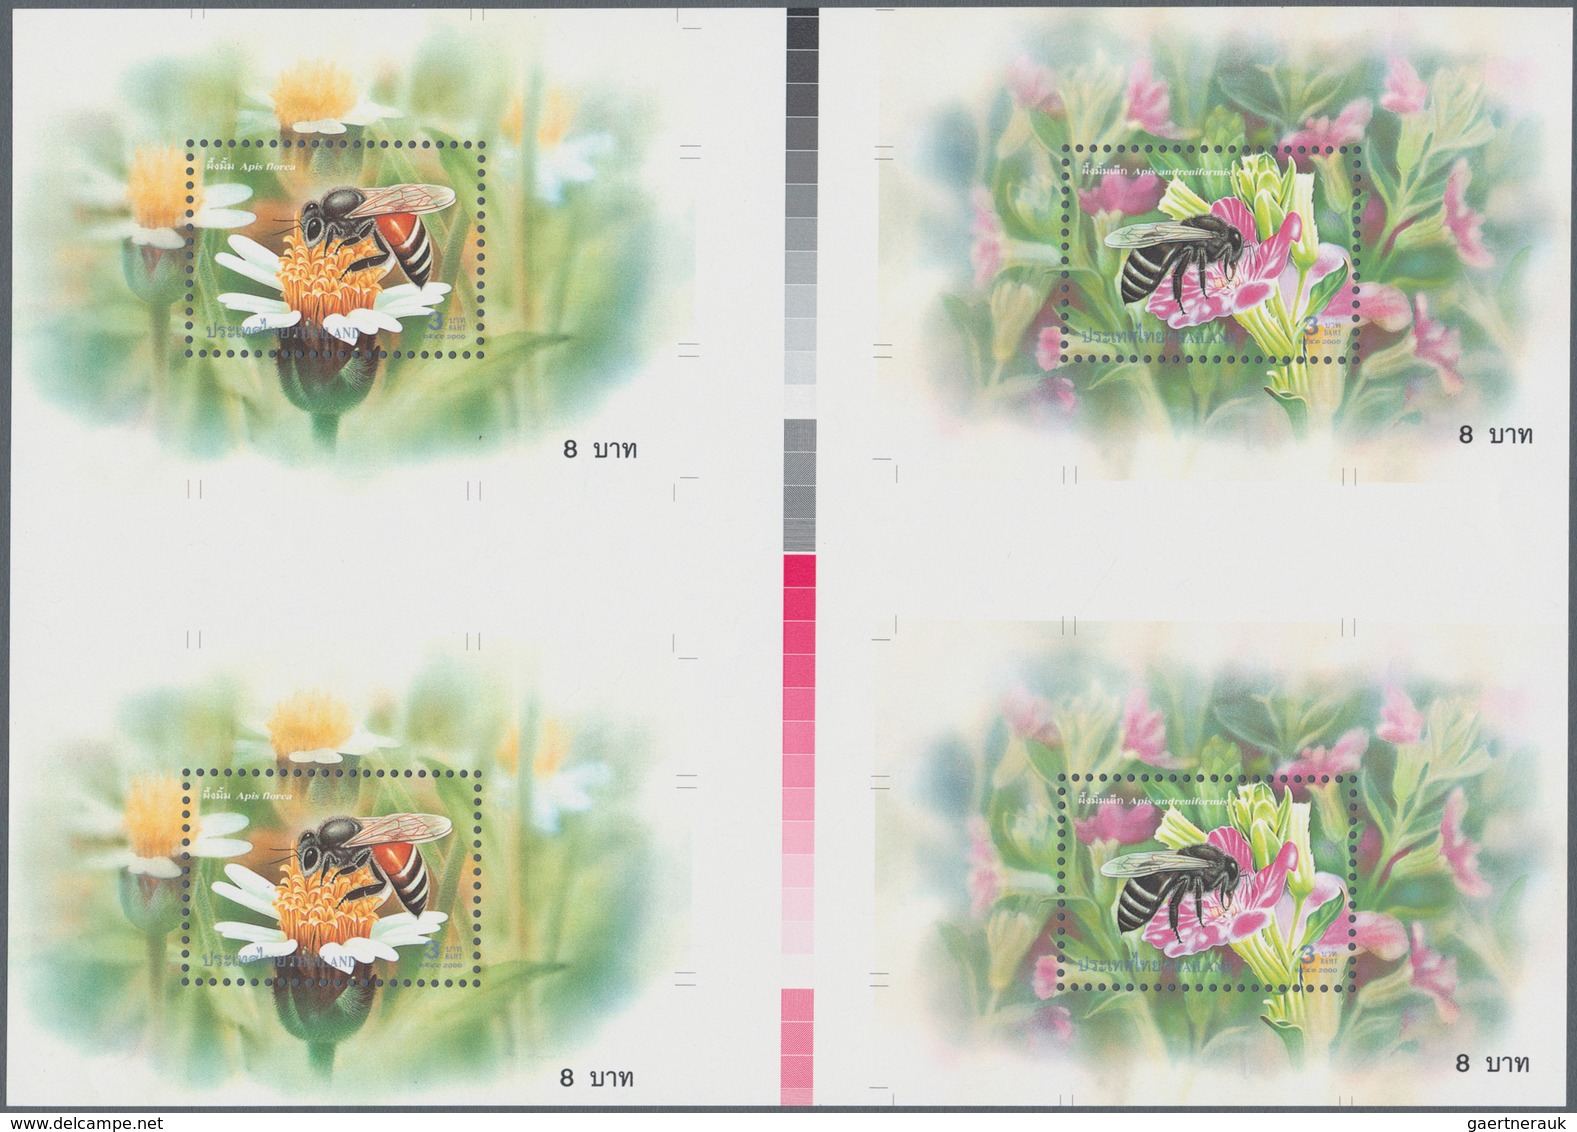 00673 Thematik: Tiere-Bienen / Animals-bees: 2000, Thailand. Set Of Two Cross Gutter Proof Blocks Of 2 Tim - Bienen